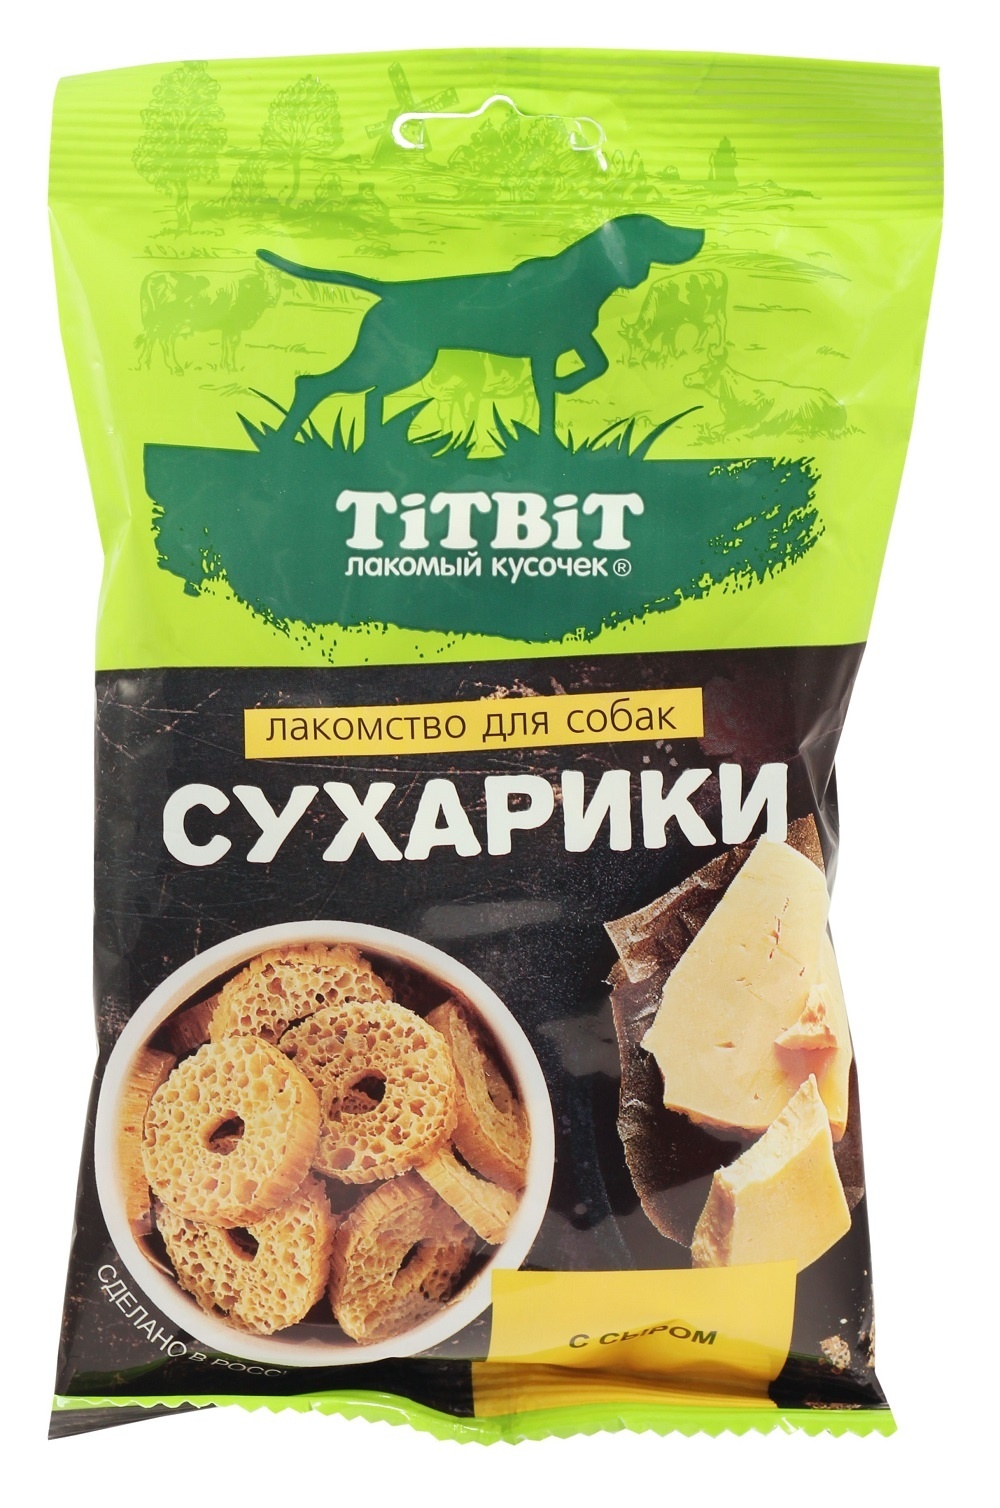 TiTBiT TiTBiT сухарики с сыром, лакомство для собак (55 г) лакомство для собак titbit сухарики с сыром 55 г